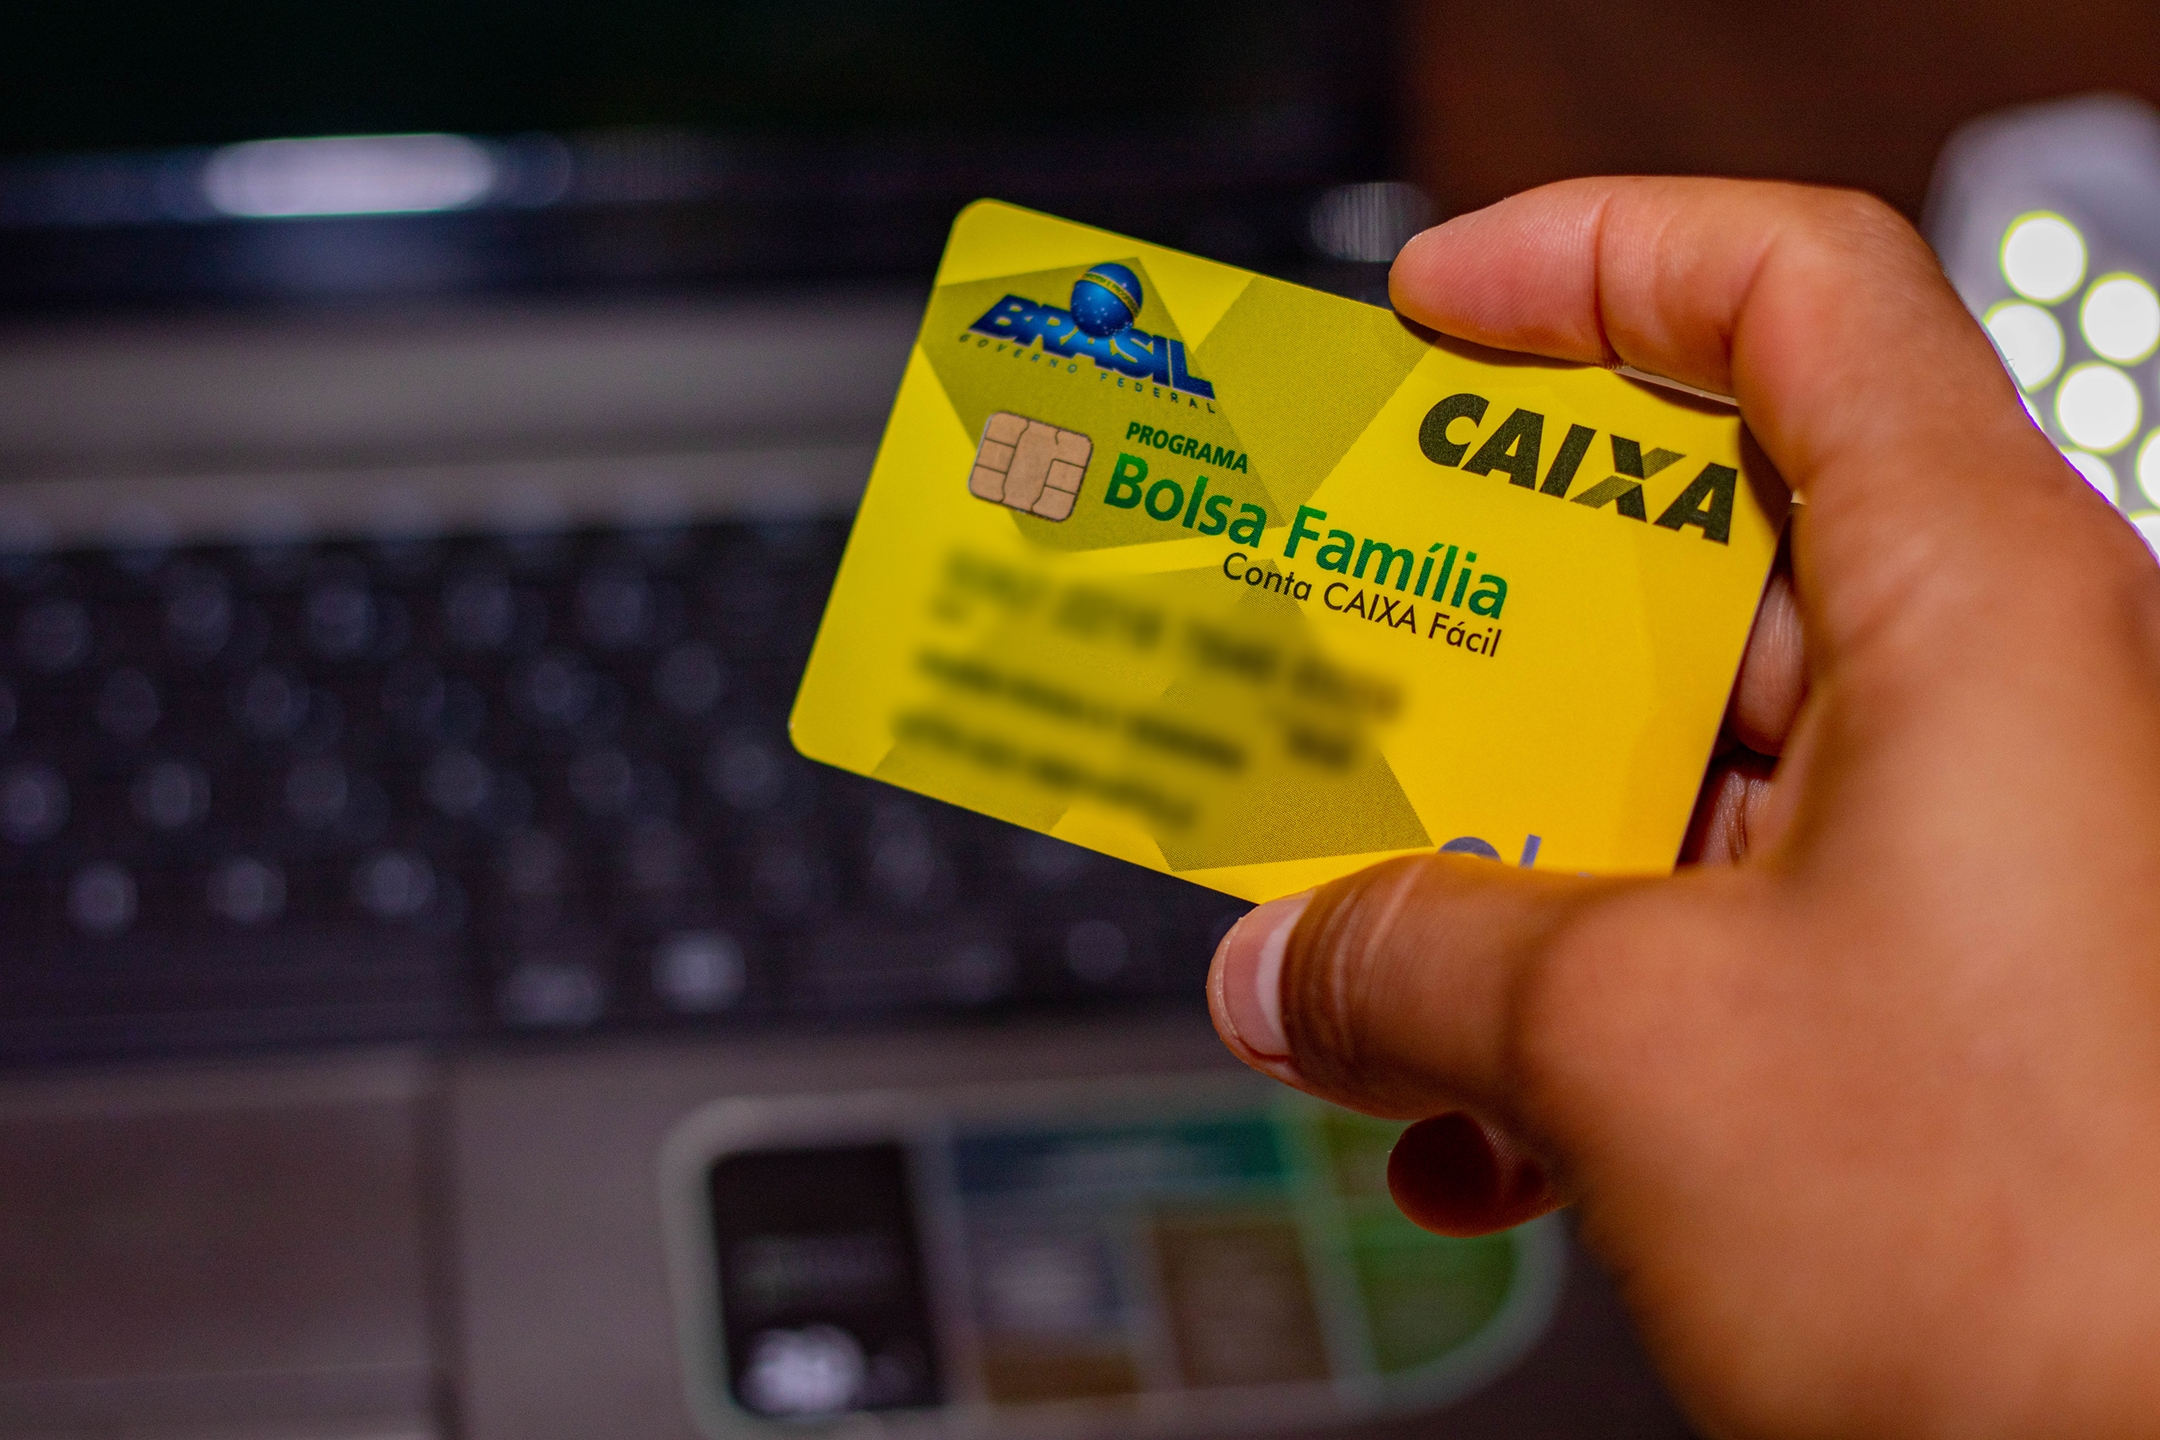  Научете как да деблокирате картата си Bolsa Família с помощта на мобилния си телефон.